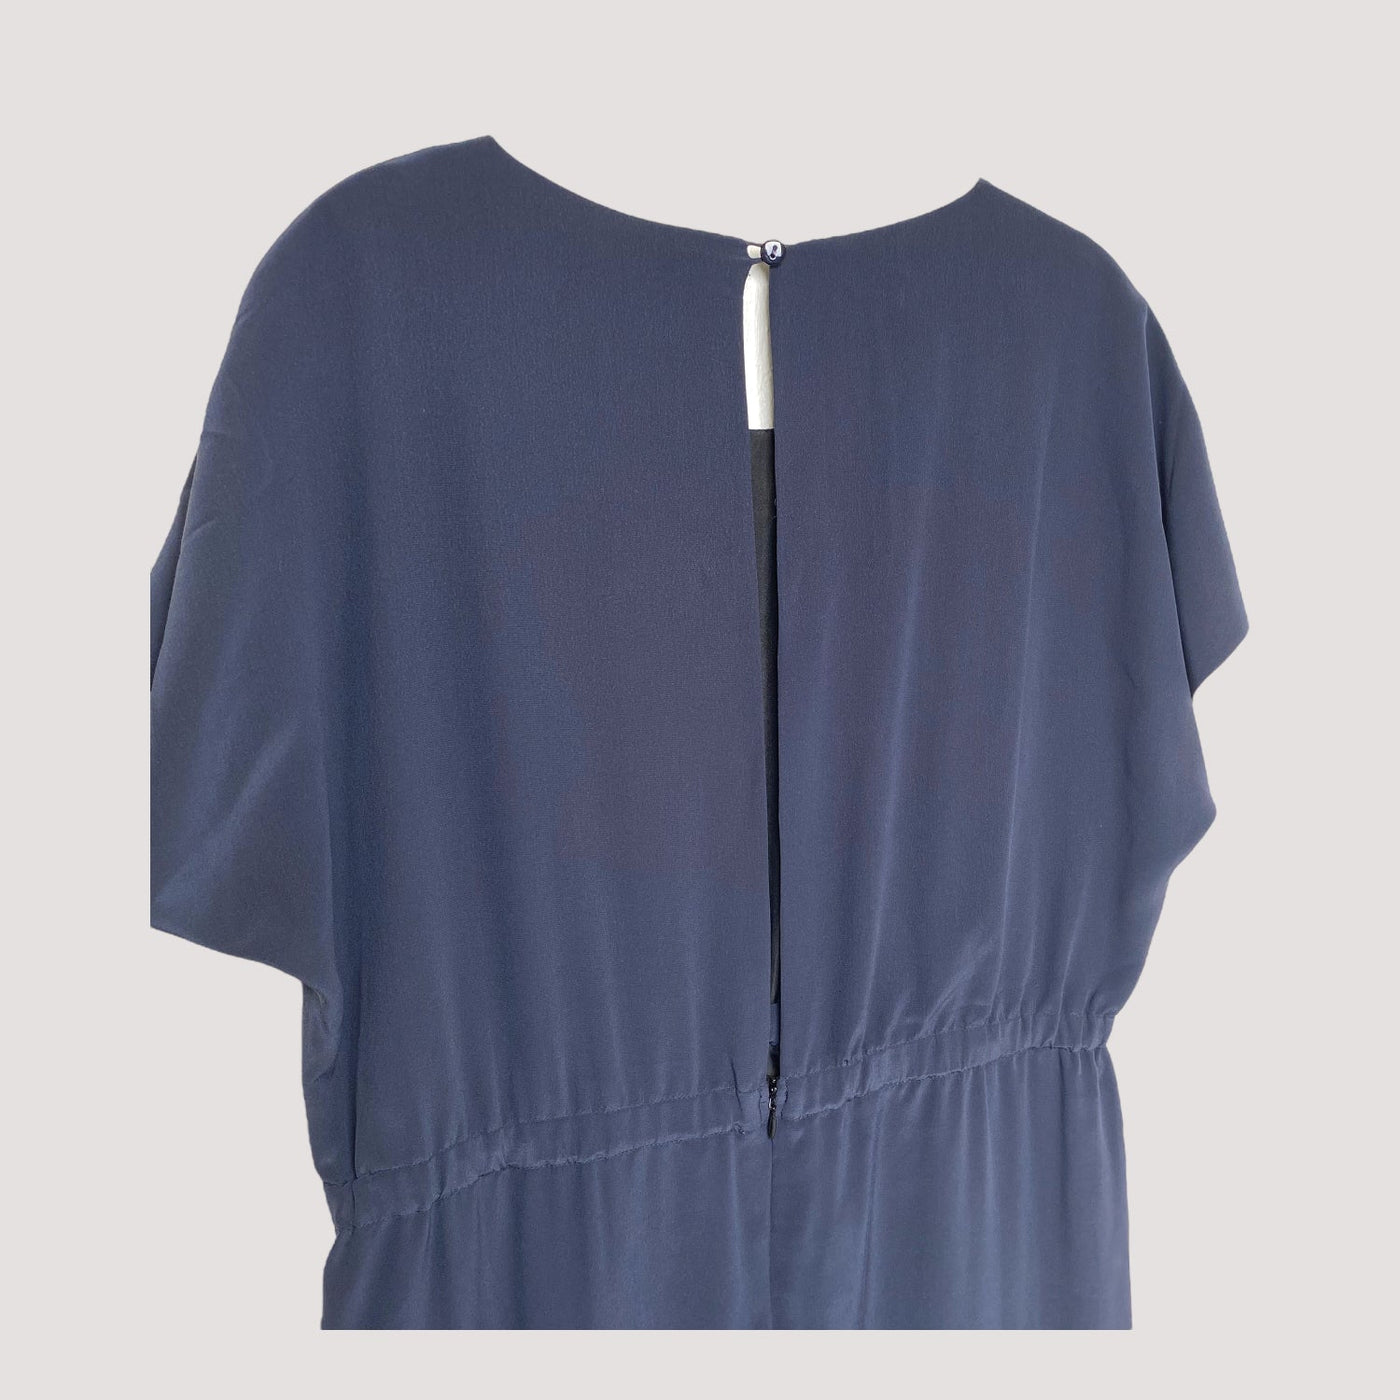 geometric silk dress, navy blue | woman L